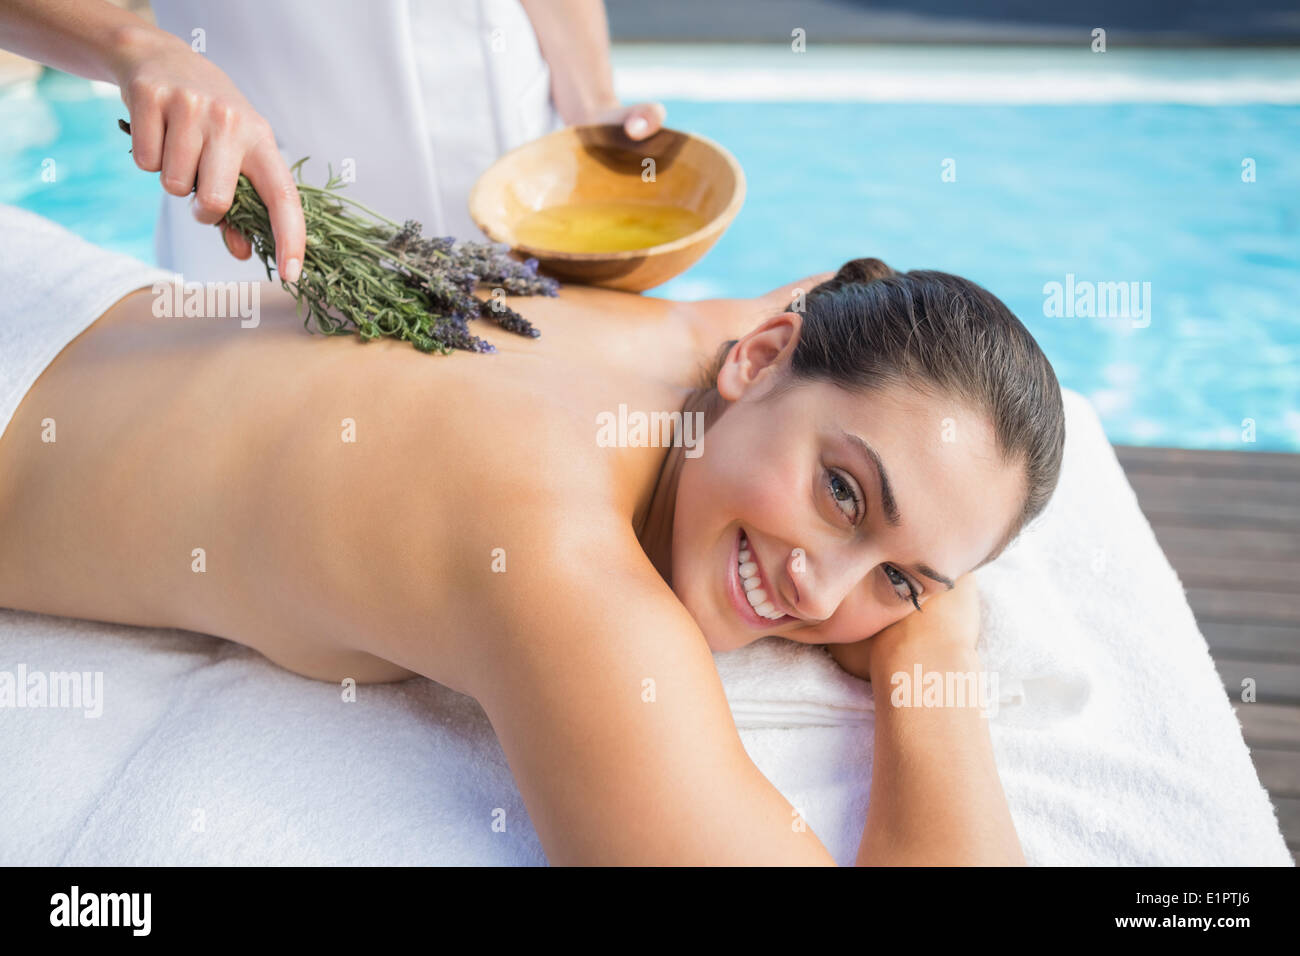 Lächelnde Frau, die immer eine Aromatherapie-Behandlung am Pool Stockfoto